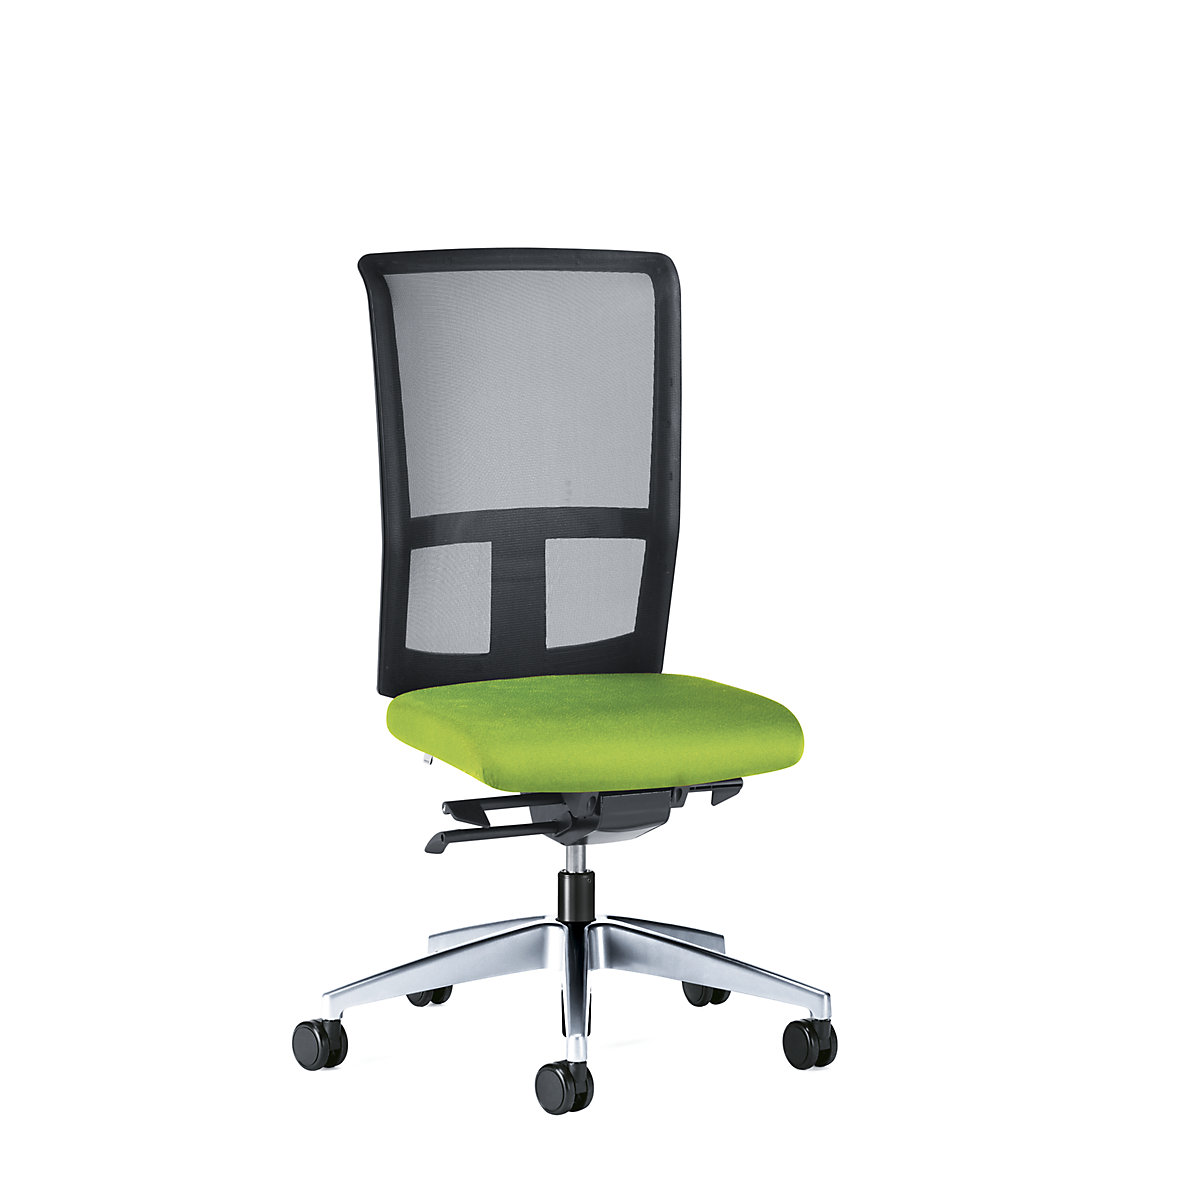 Bürodrehstuhl GOAL AIR, Rückenlehnenhöhe 545 mm interstuhl, Gestell poliert, mit weichen Rollen, gelbgrün, Sitztiefe 410 mm